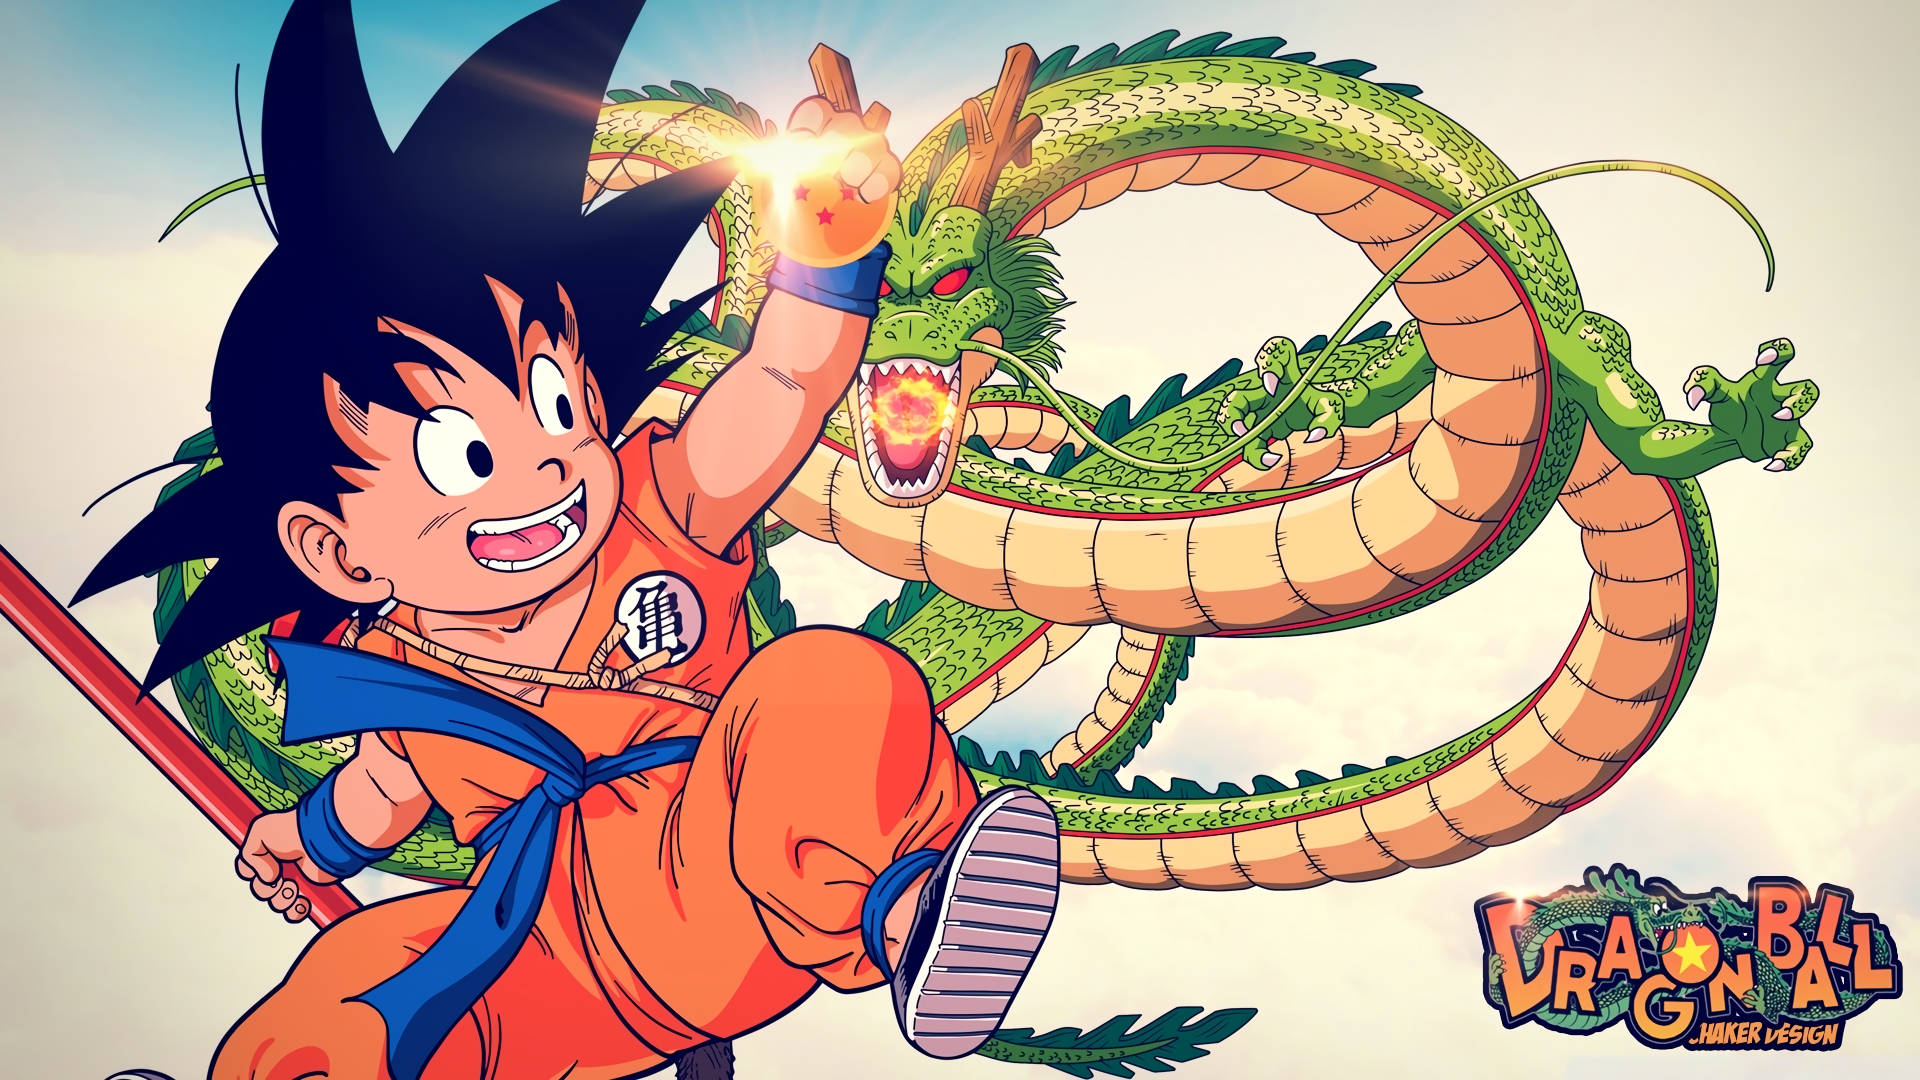 Goku 1920 X 1080 Background